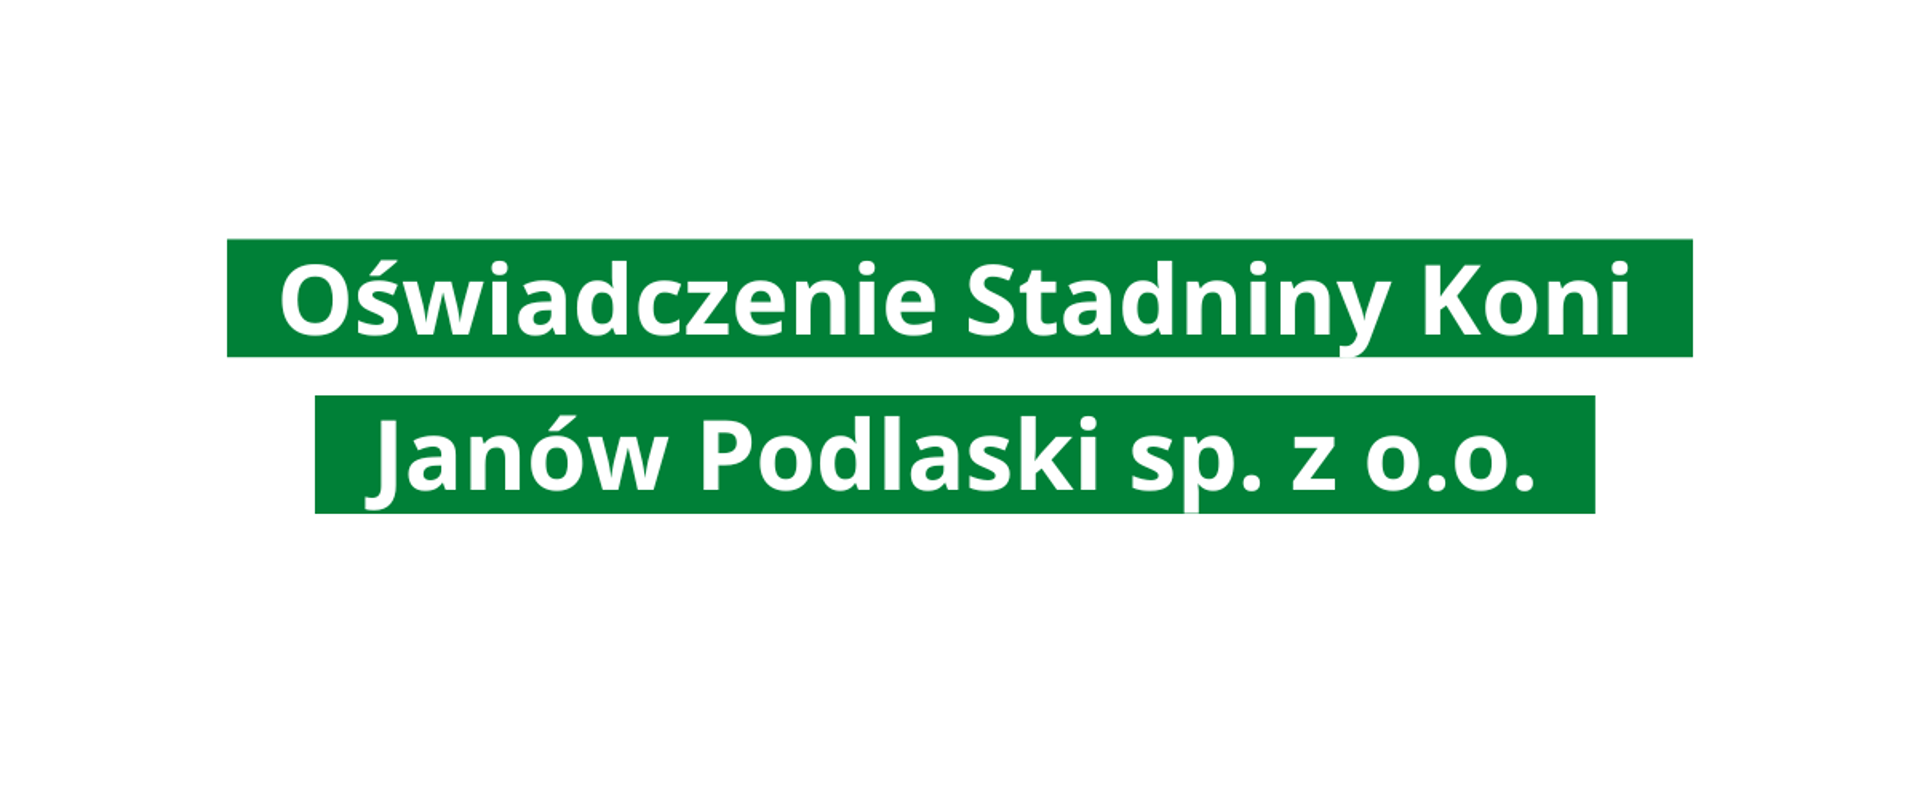 Oświadczenie Stadniny Koni Janów Podlaski sp. z o.o.